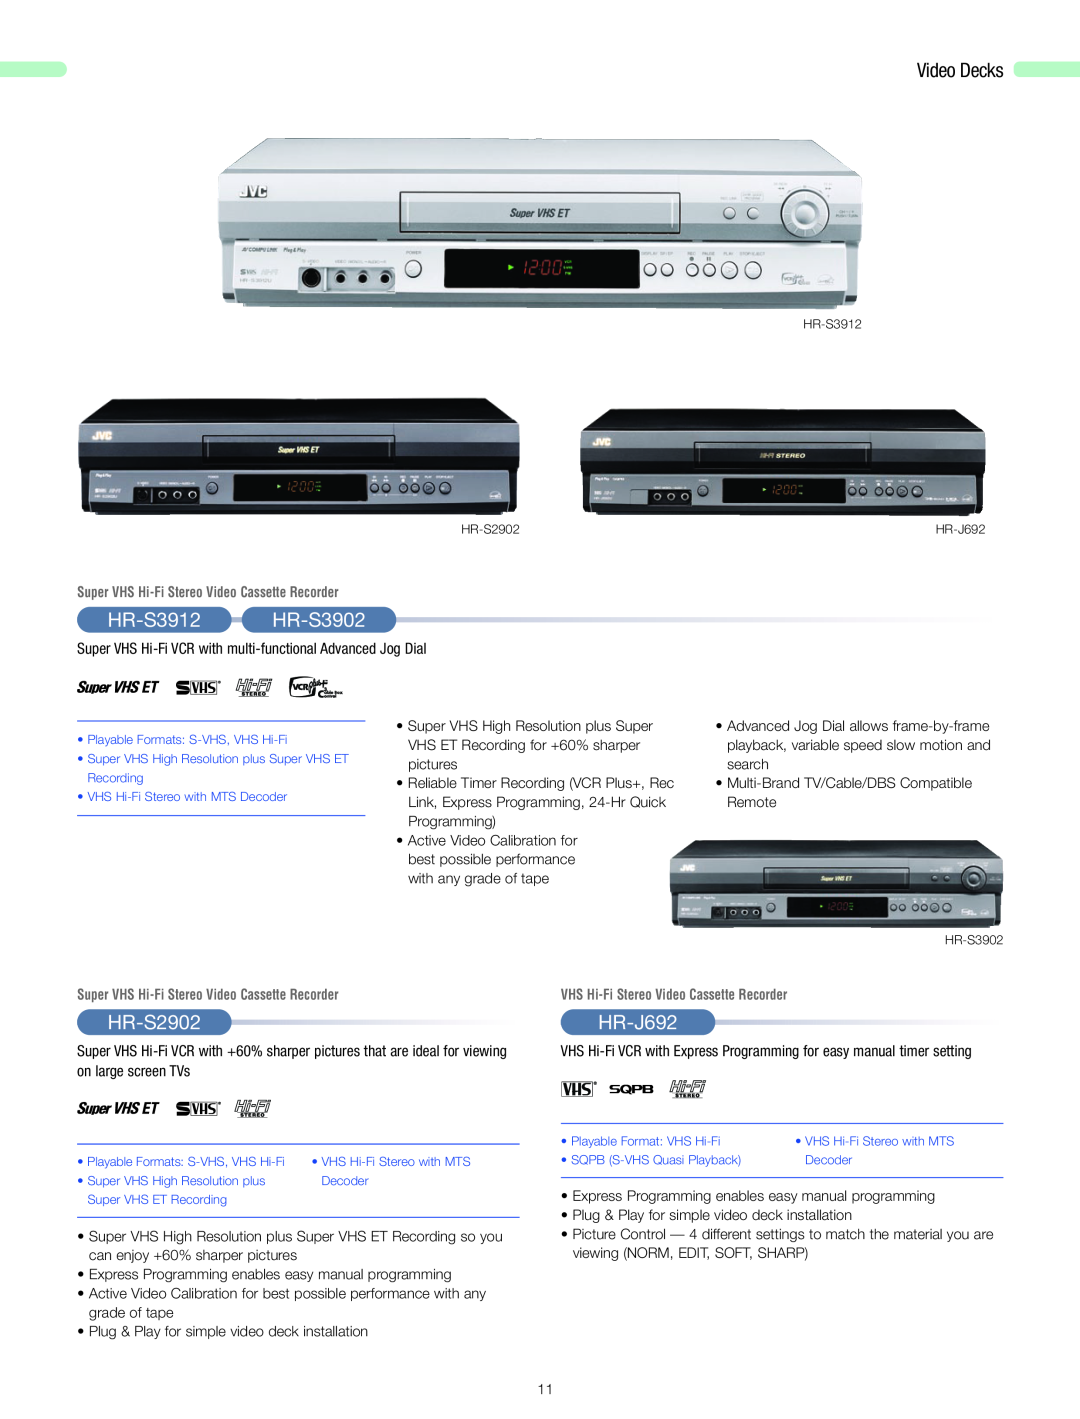 JVC 2006 manual HR-S3912 HR-S3902, HR-S2902, HR-J692, VHS Hi-Fi Stereo Video Cassette Recorder, Video Decks 